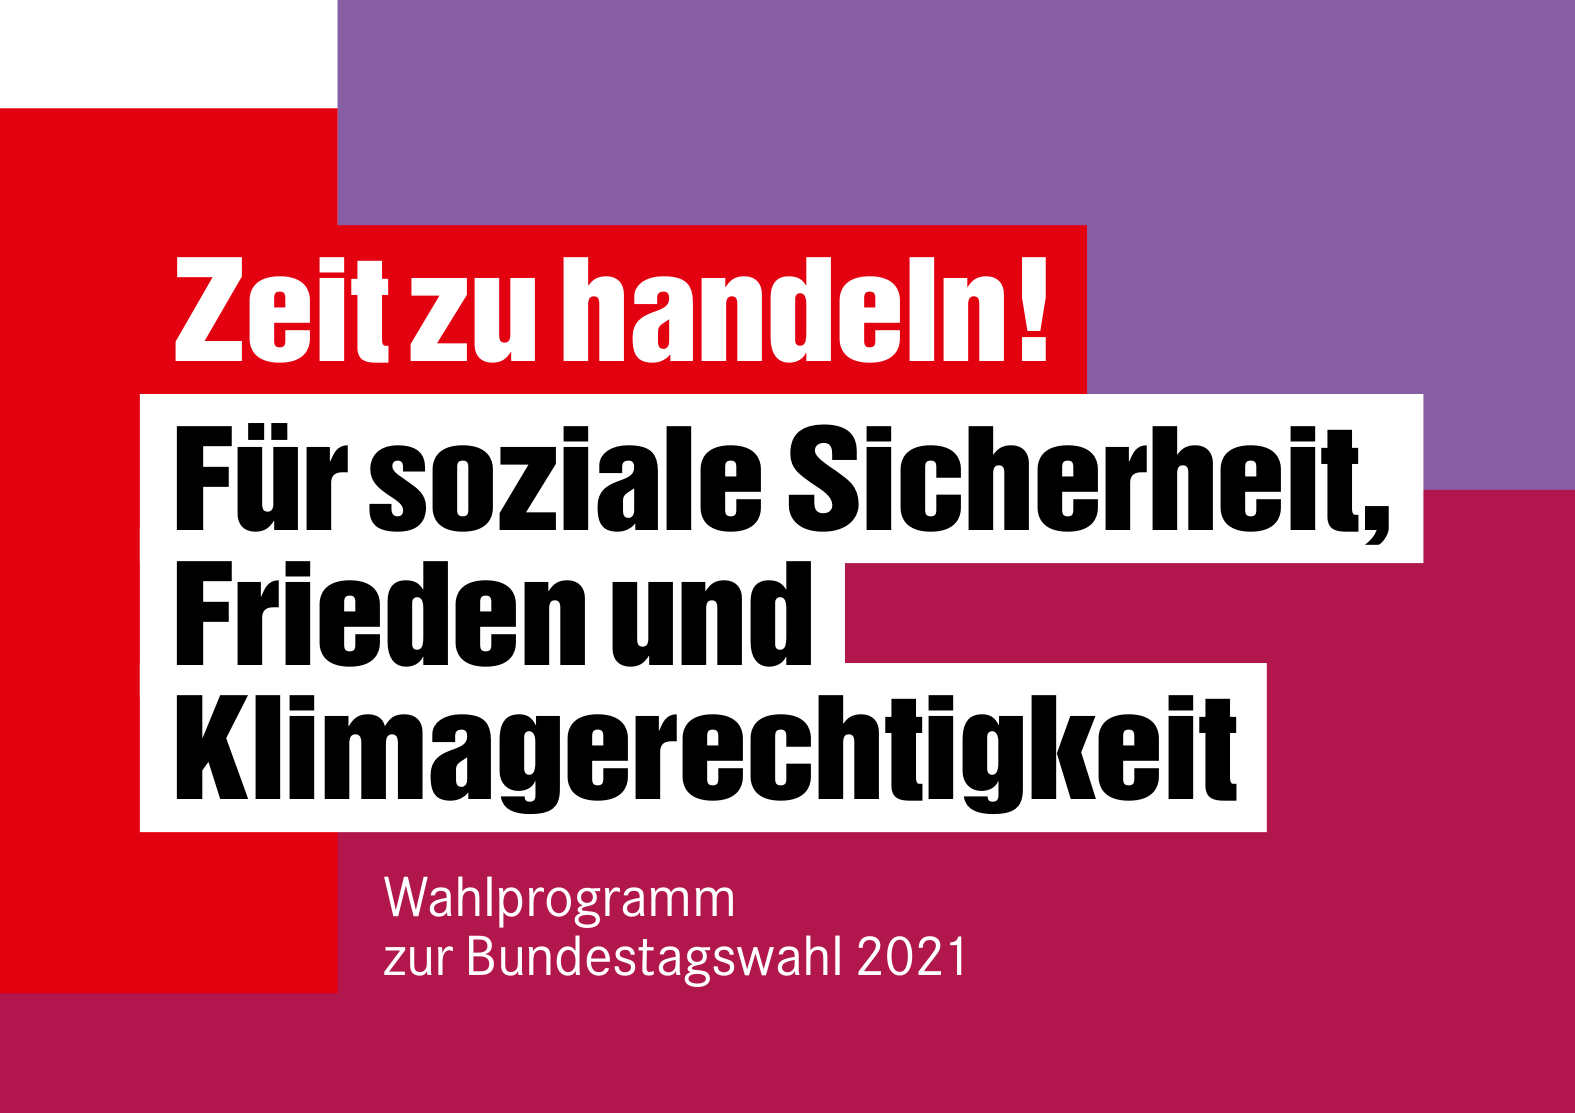 Die Linke: Wahlprogramm für die Bundestagswahl 2021